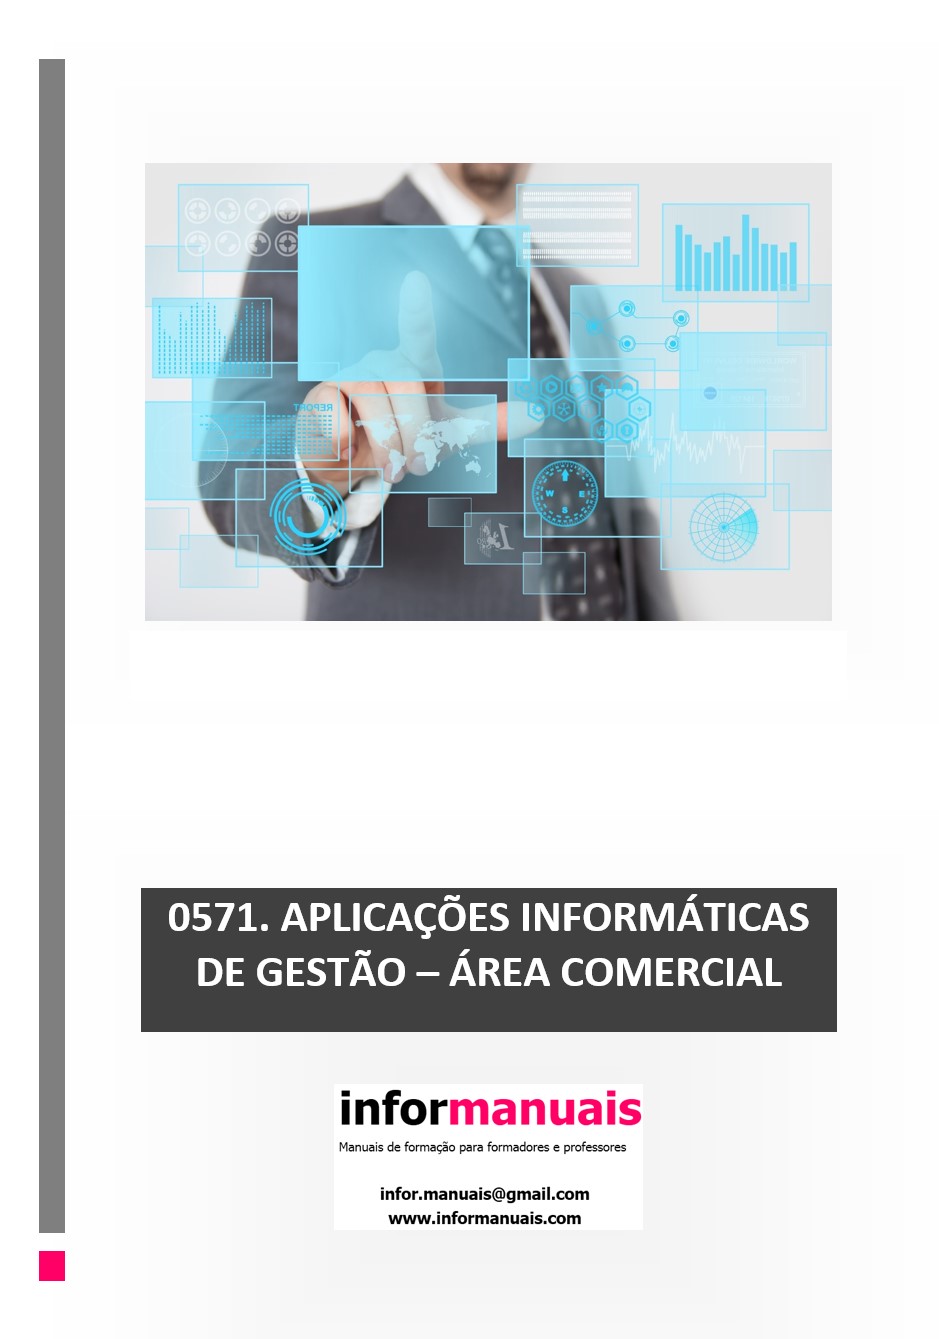 manual-ufcd-0704-atendimento-tecnicas-de-comunicacao.pdf